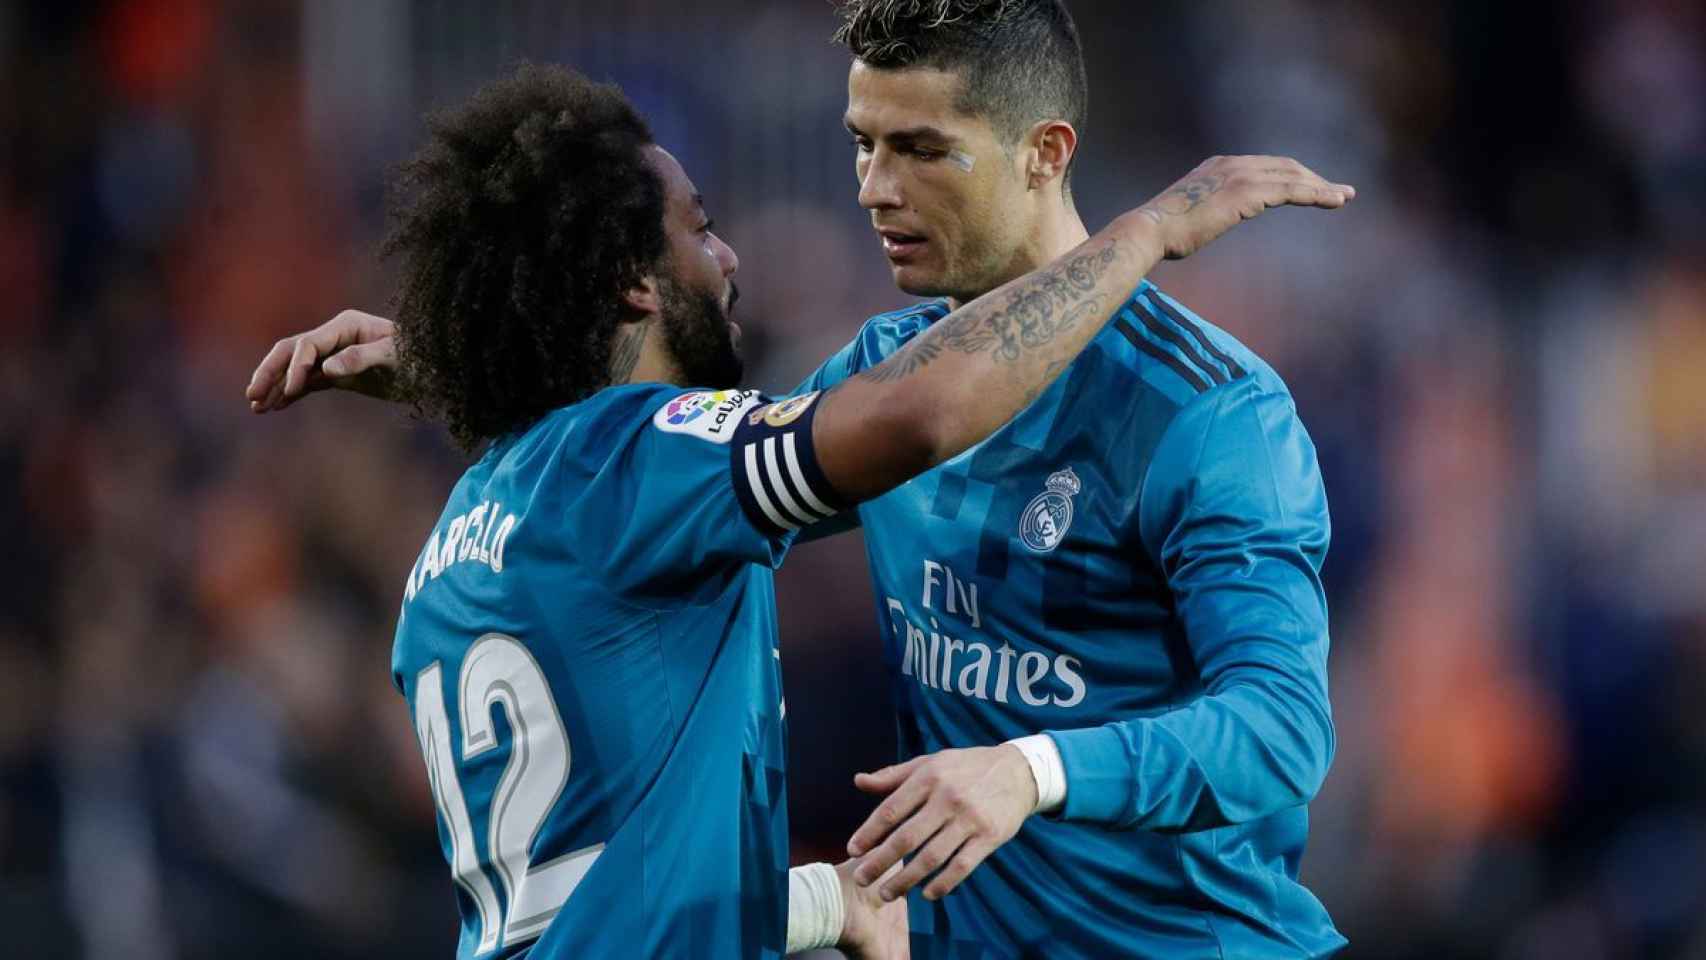 Marcelo y Cristiano Ronaldo en un partido del Real Madrid.